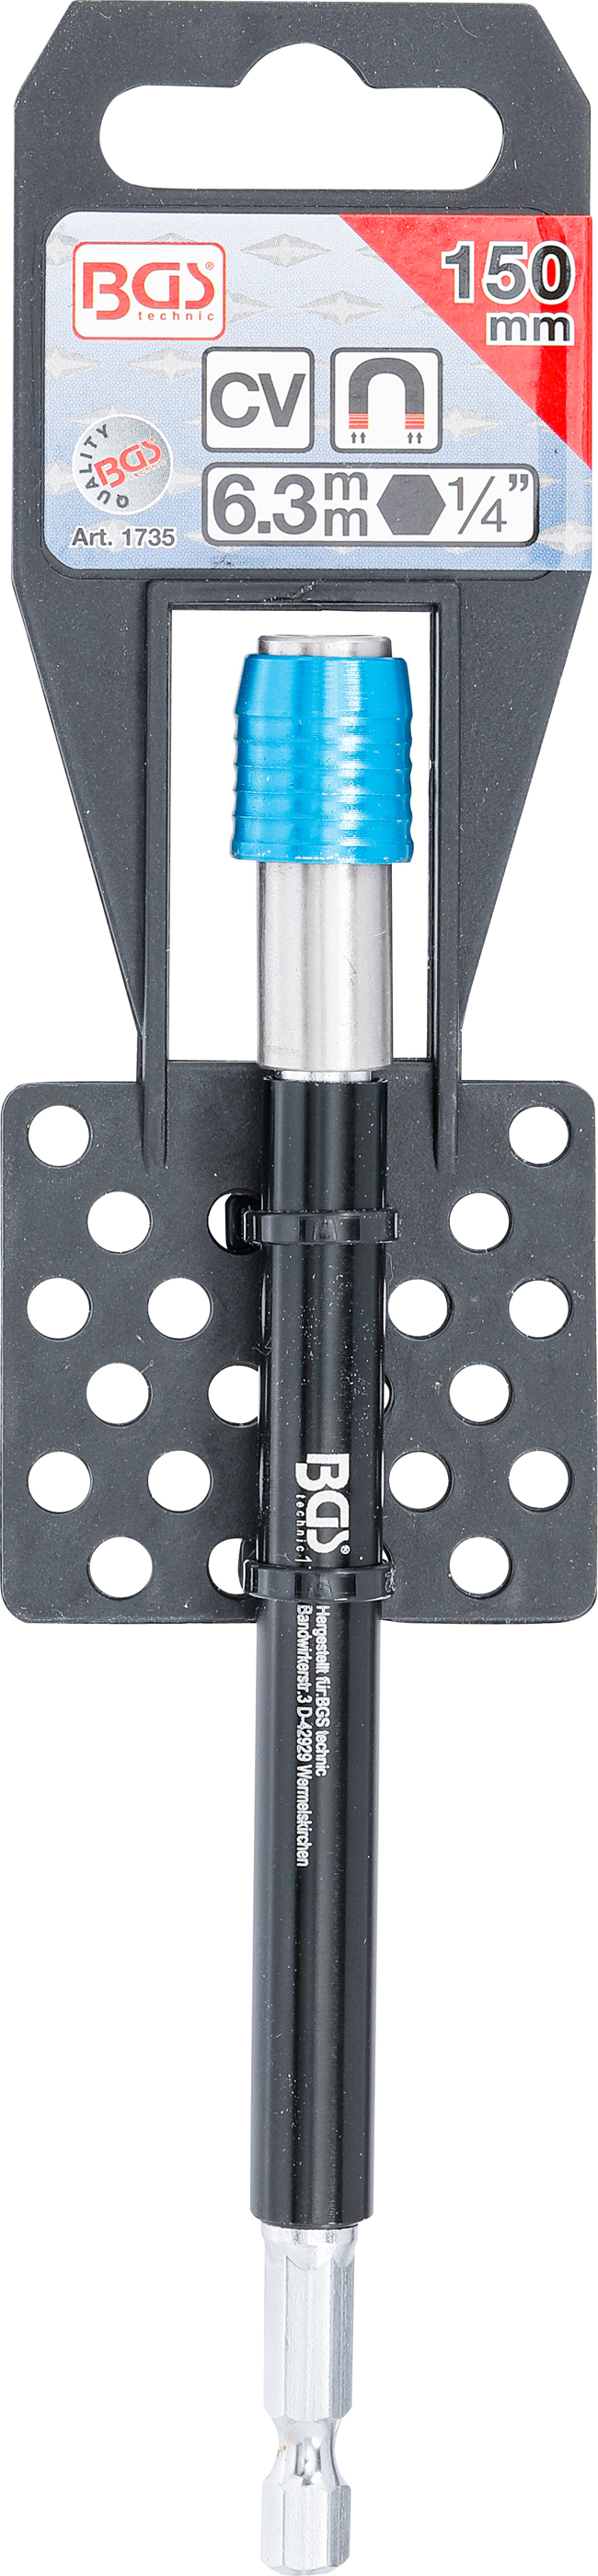 BGS Automatischer Bithalter | Abtrieb Innensechskant 6,3 mm (1/4") | 150 mm